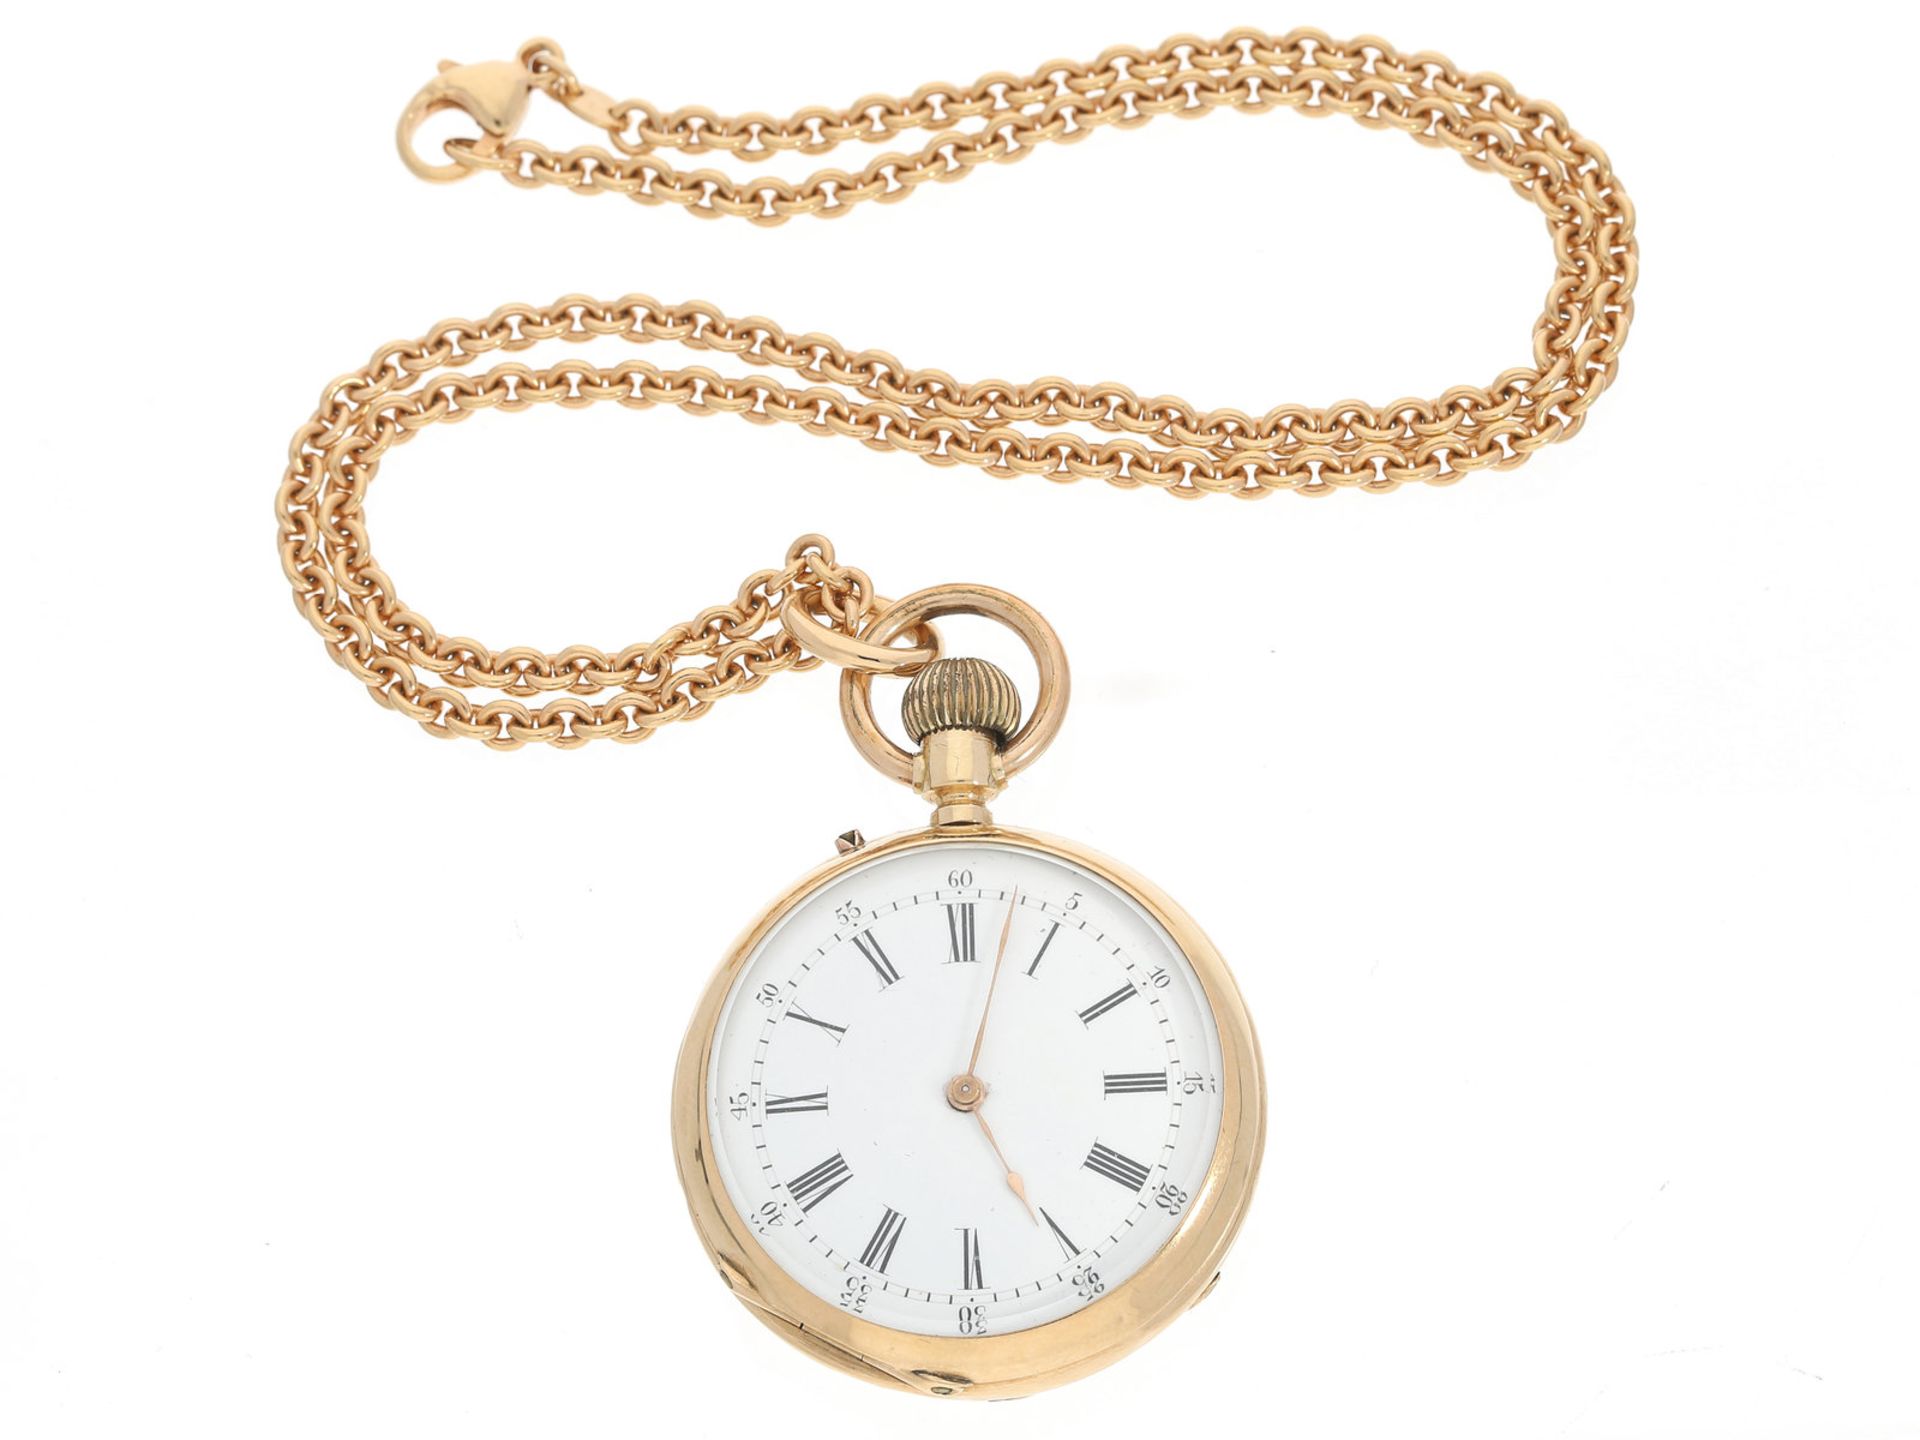 Taschenuhr/Anhängeuhr: antike goldene Damentaschenuhr an hochwertiger 18K Halskette, Uhr signiert